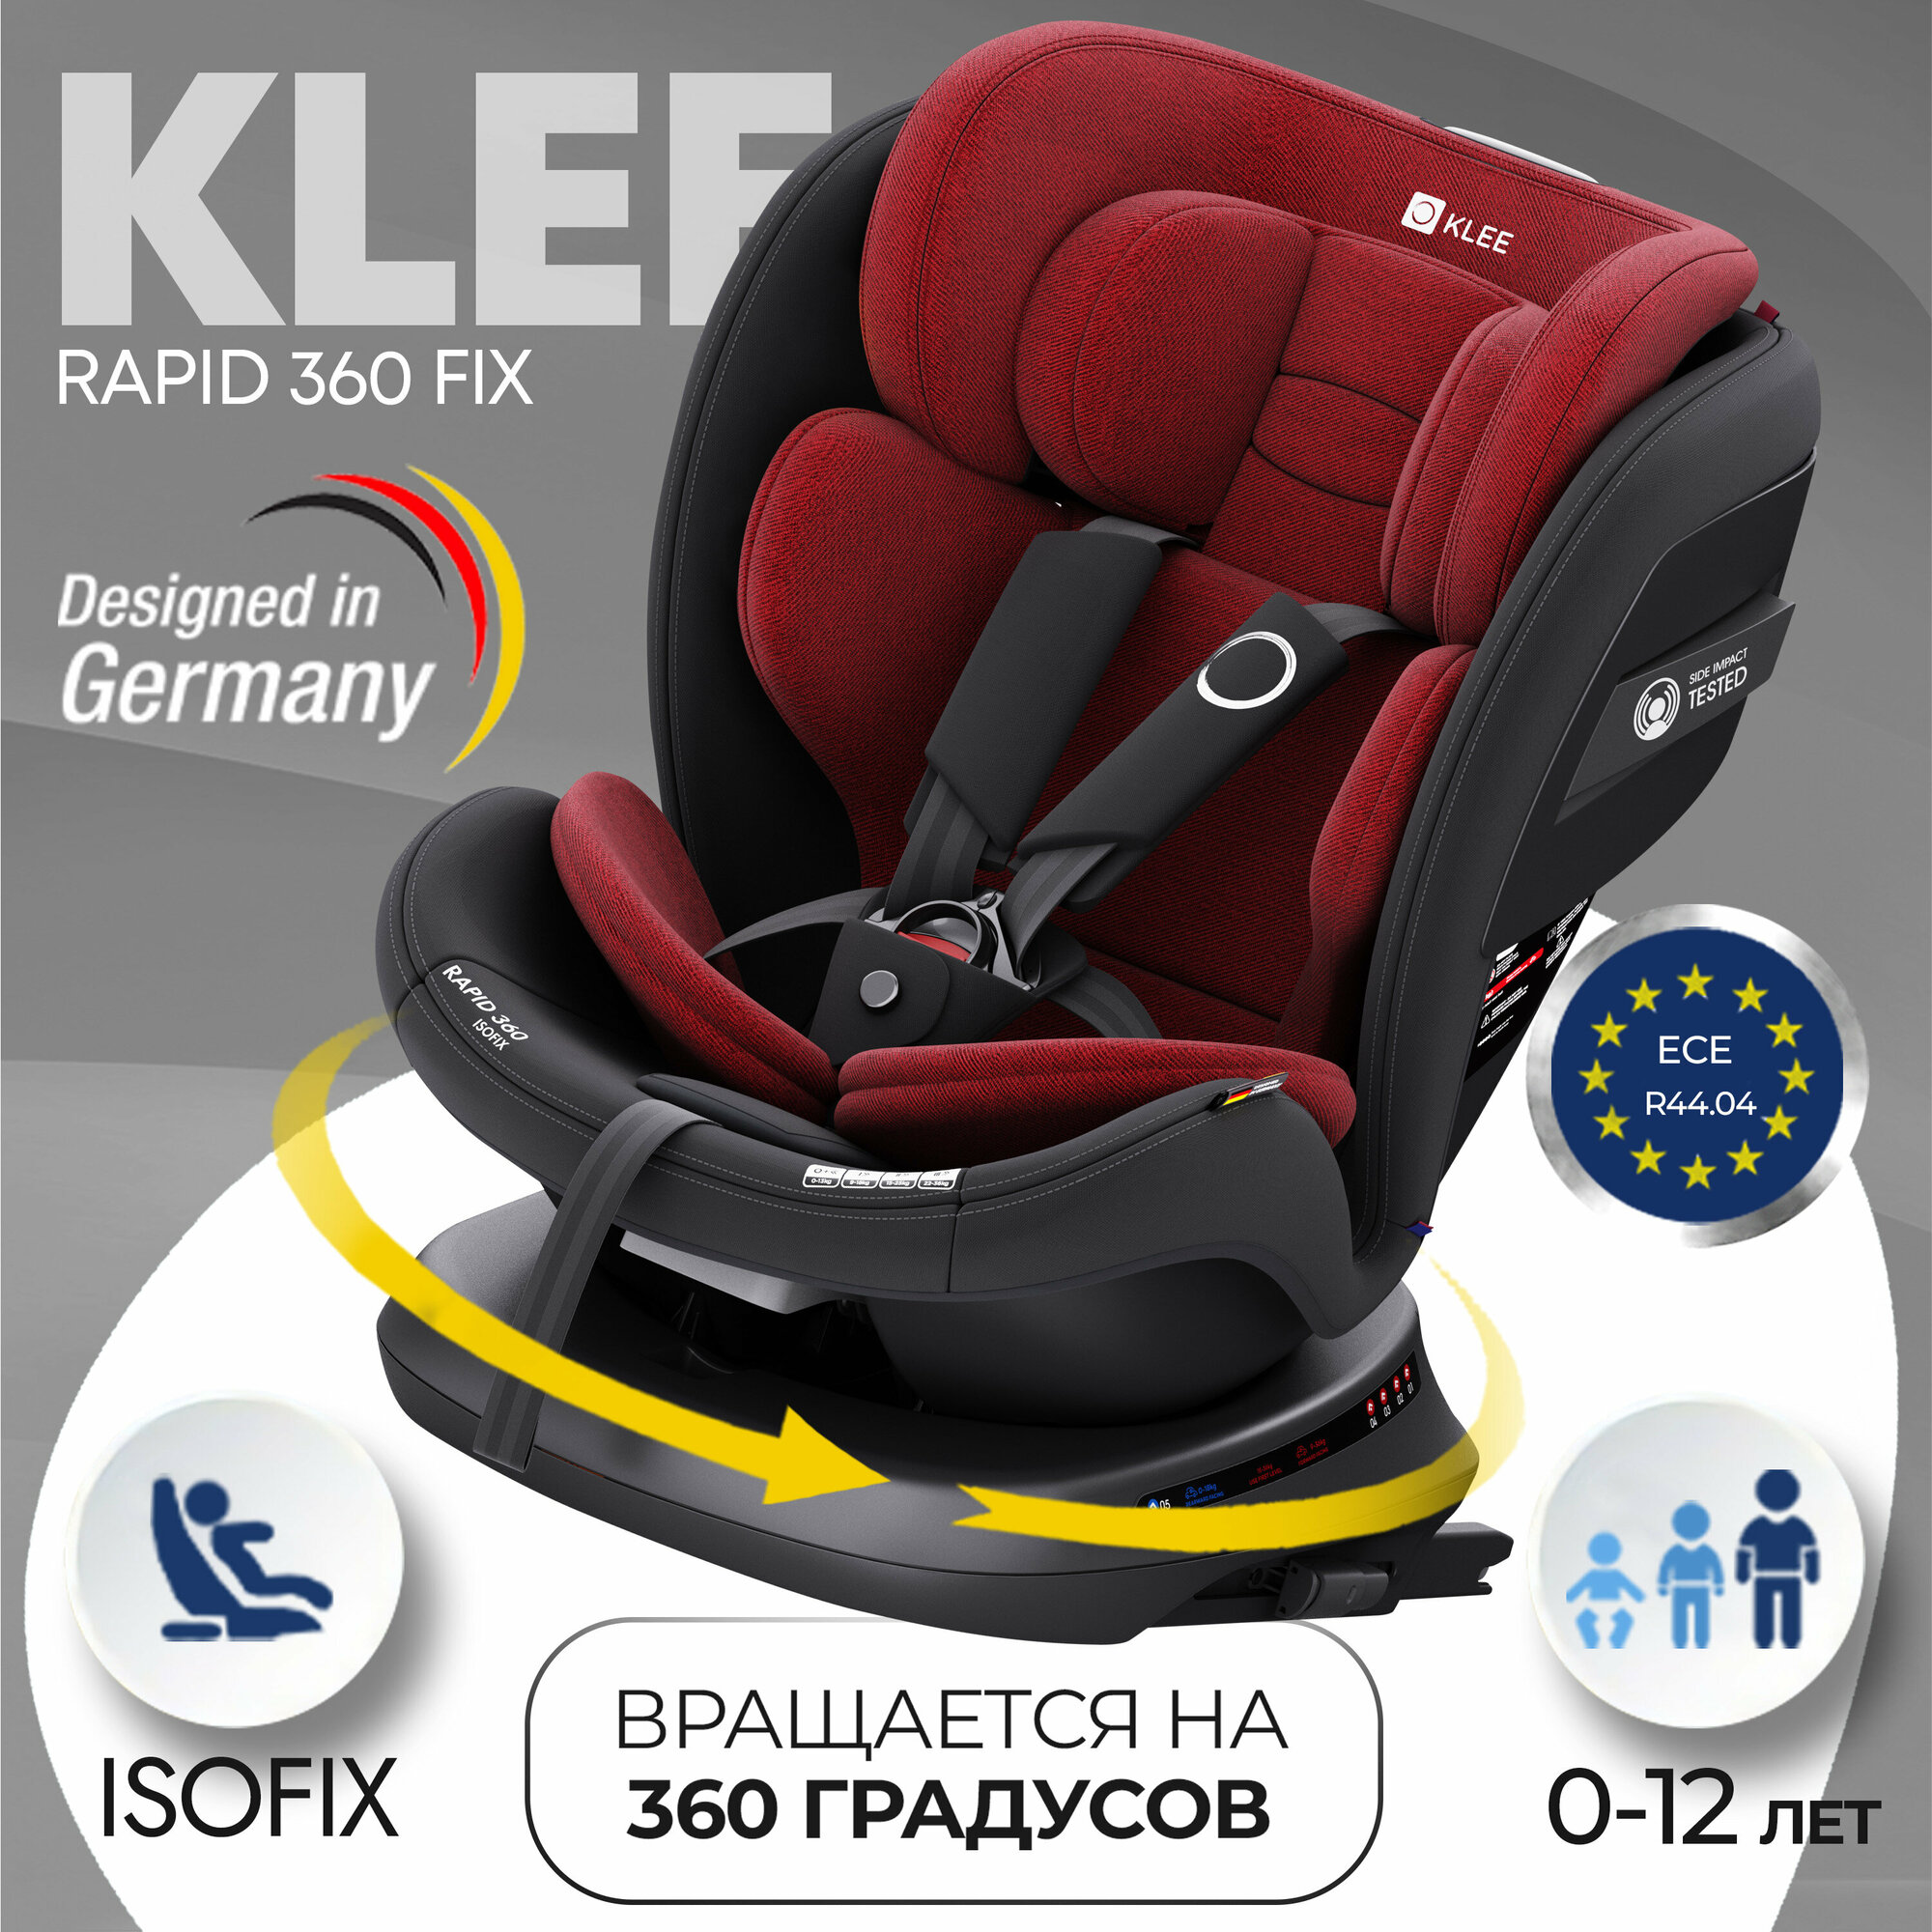 KLEE Rapid 360 Fix поворотное детское автокресло с рождения до 36 кг с Isofix Ruby Black